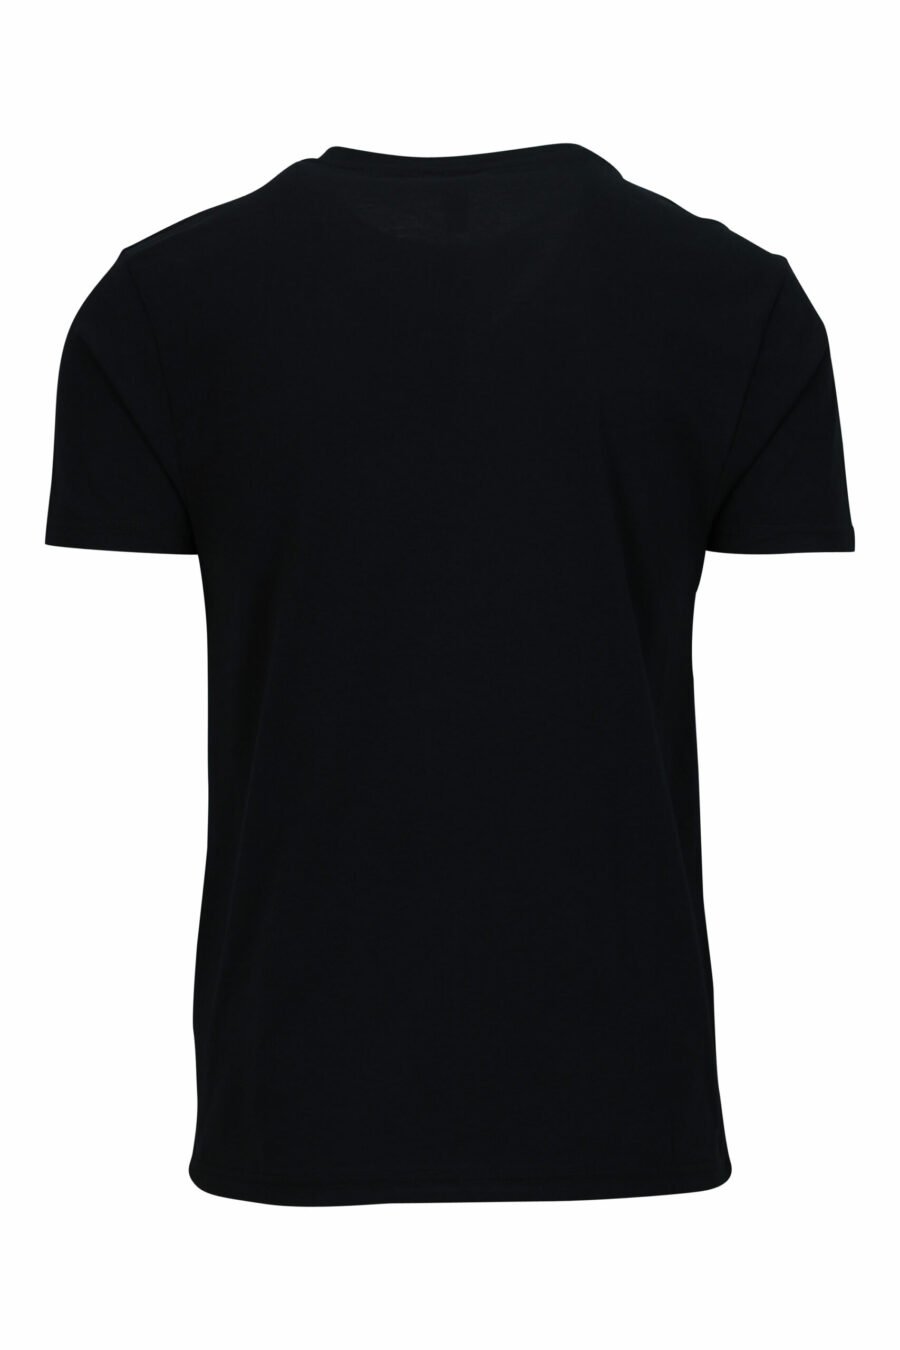 Schwarzes T-Shirt mit weißem Logo und roter Schleife an den Schultern - 667113604275 1 skaliert